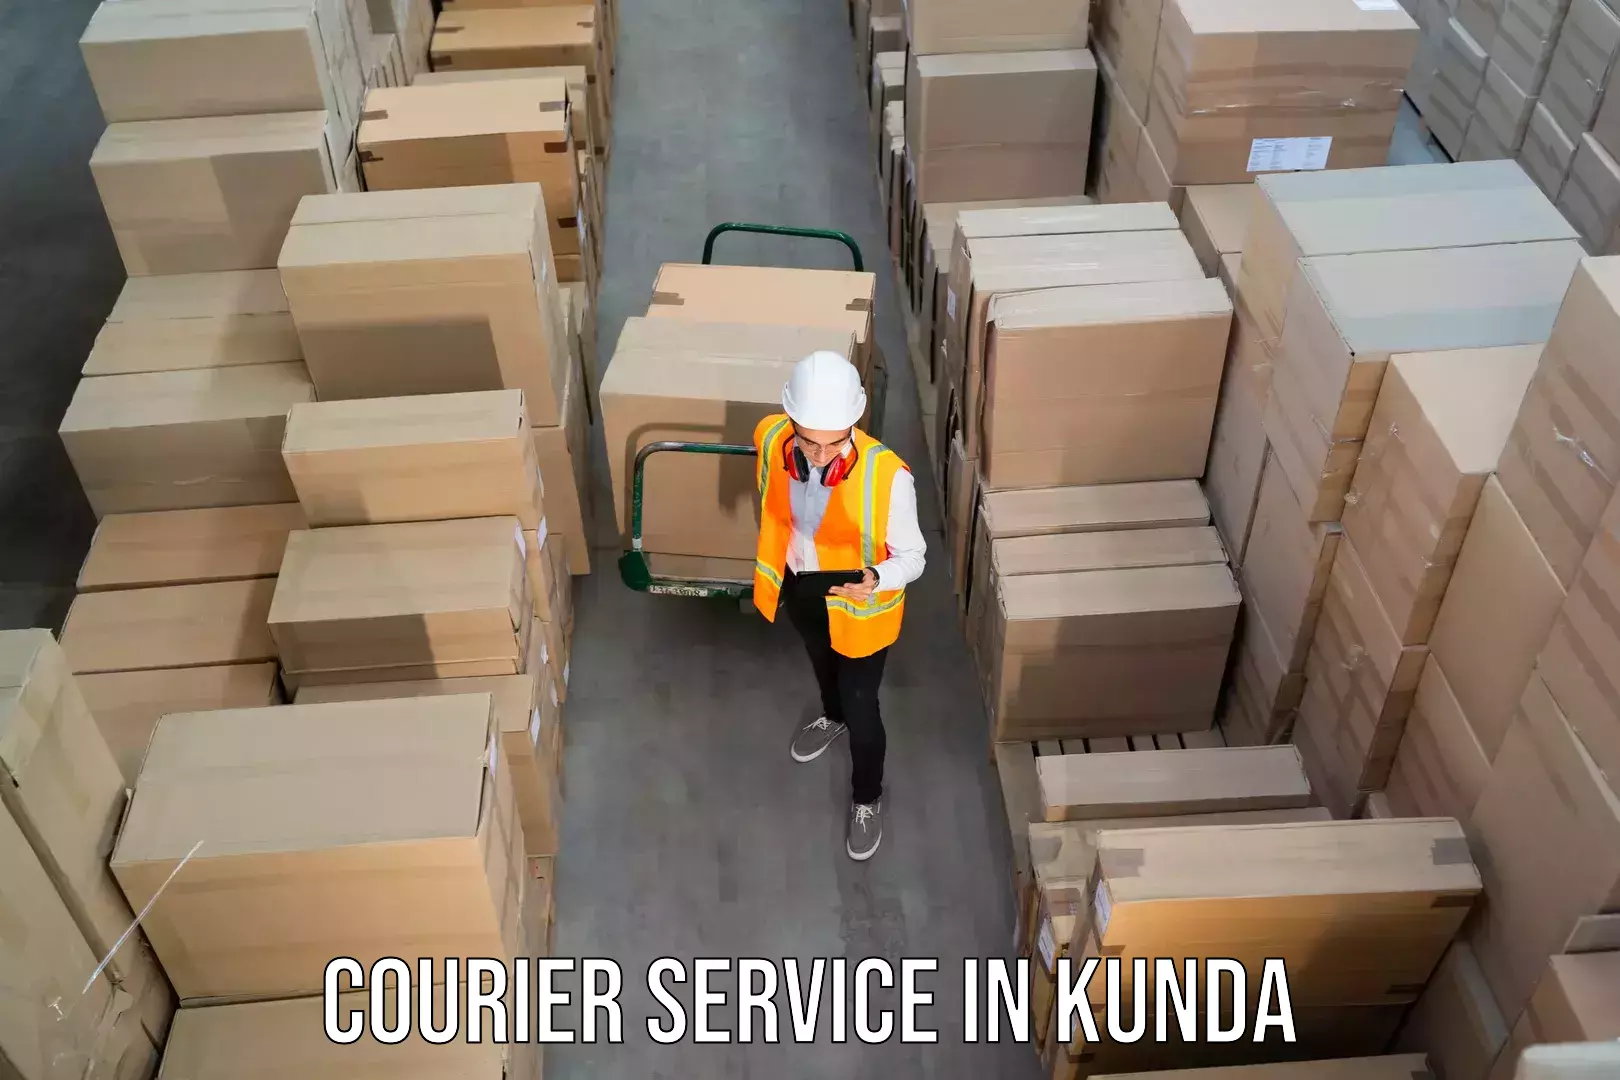 Innovative logistics solutions in Kunda